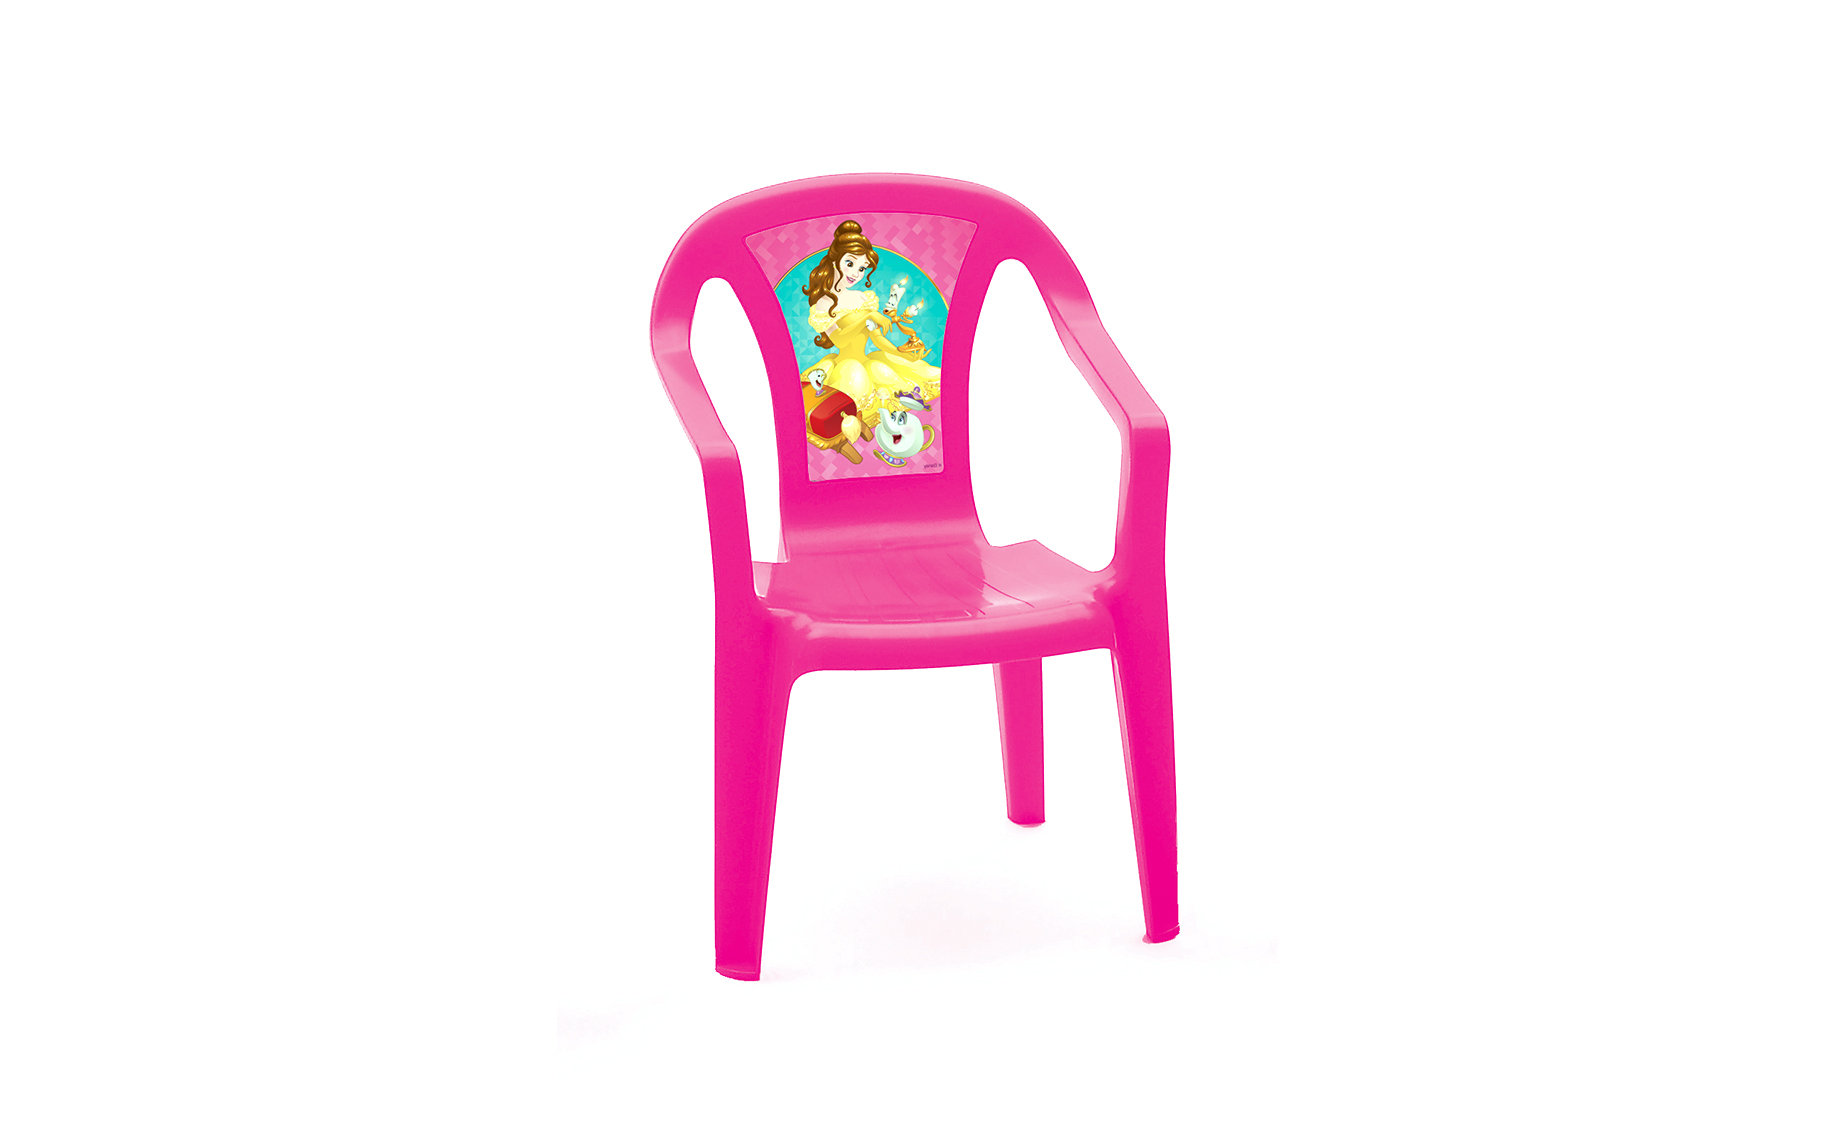 Princess stolica više motiva